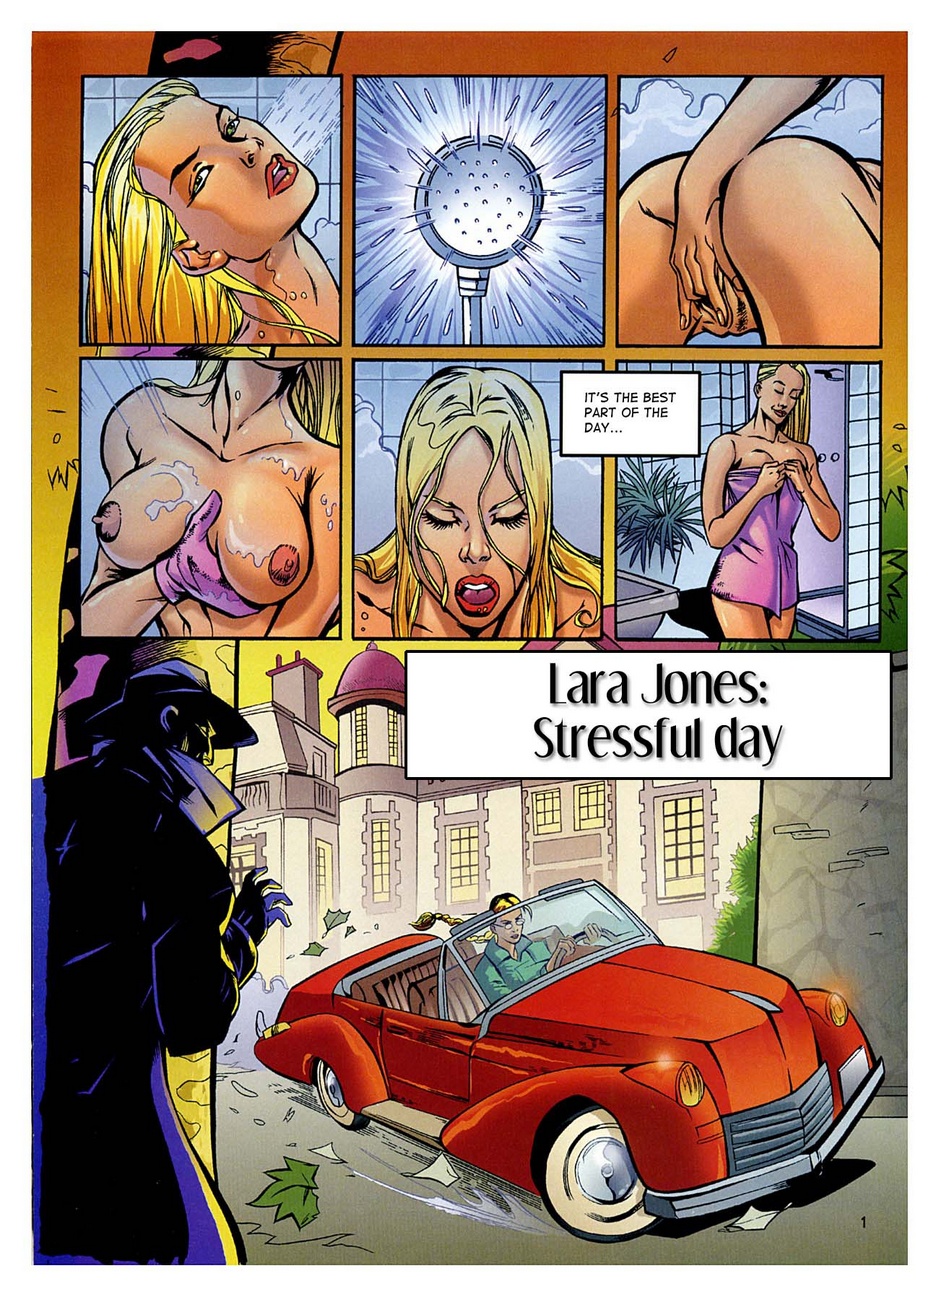 Lara Jones căng thẳng ngày